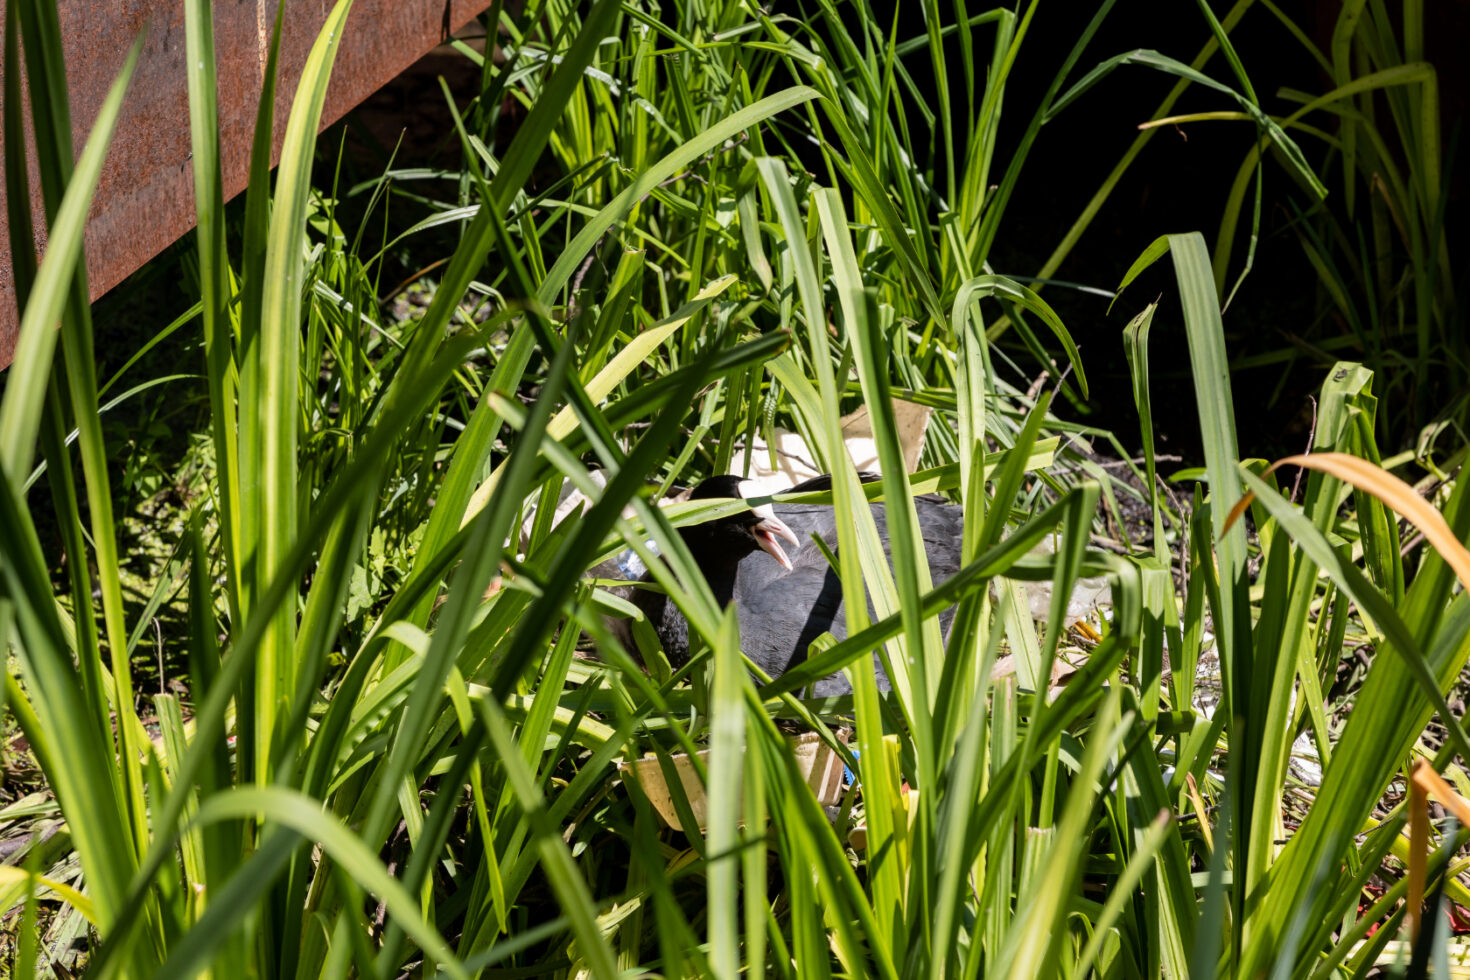 Een meerkoet broedt op een drijfeiland met moerasplanten dat tussen de kade en de damwand ligt.